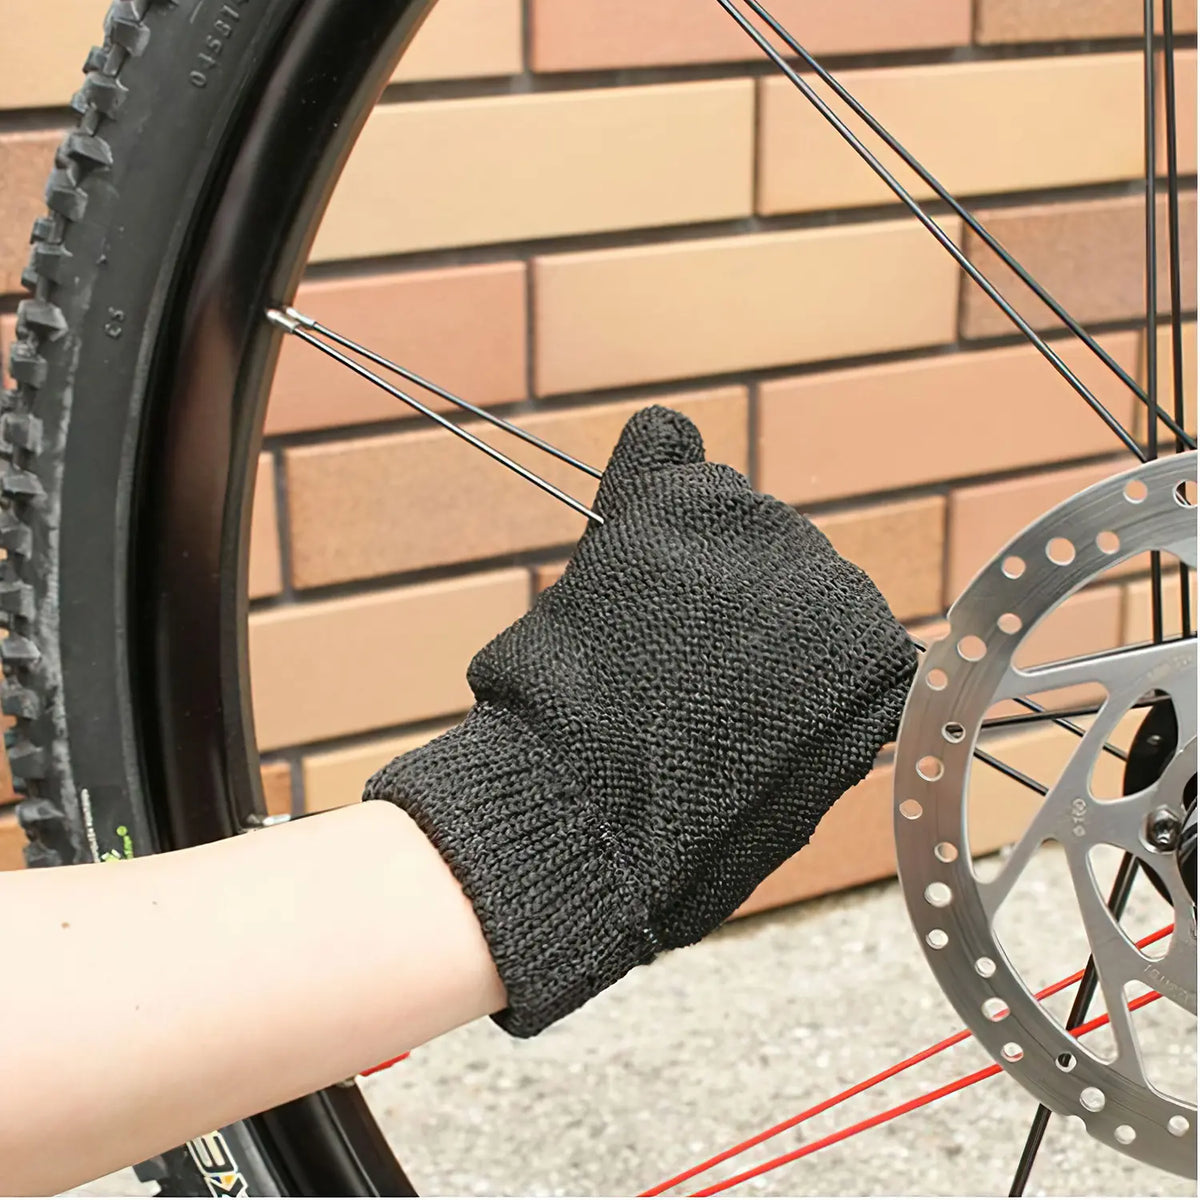 SANBELM Polyester Scrubbing Glove (One Hand)